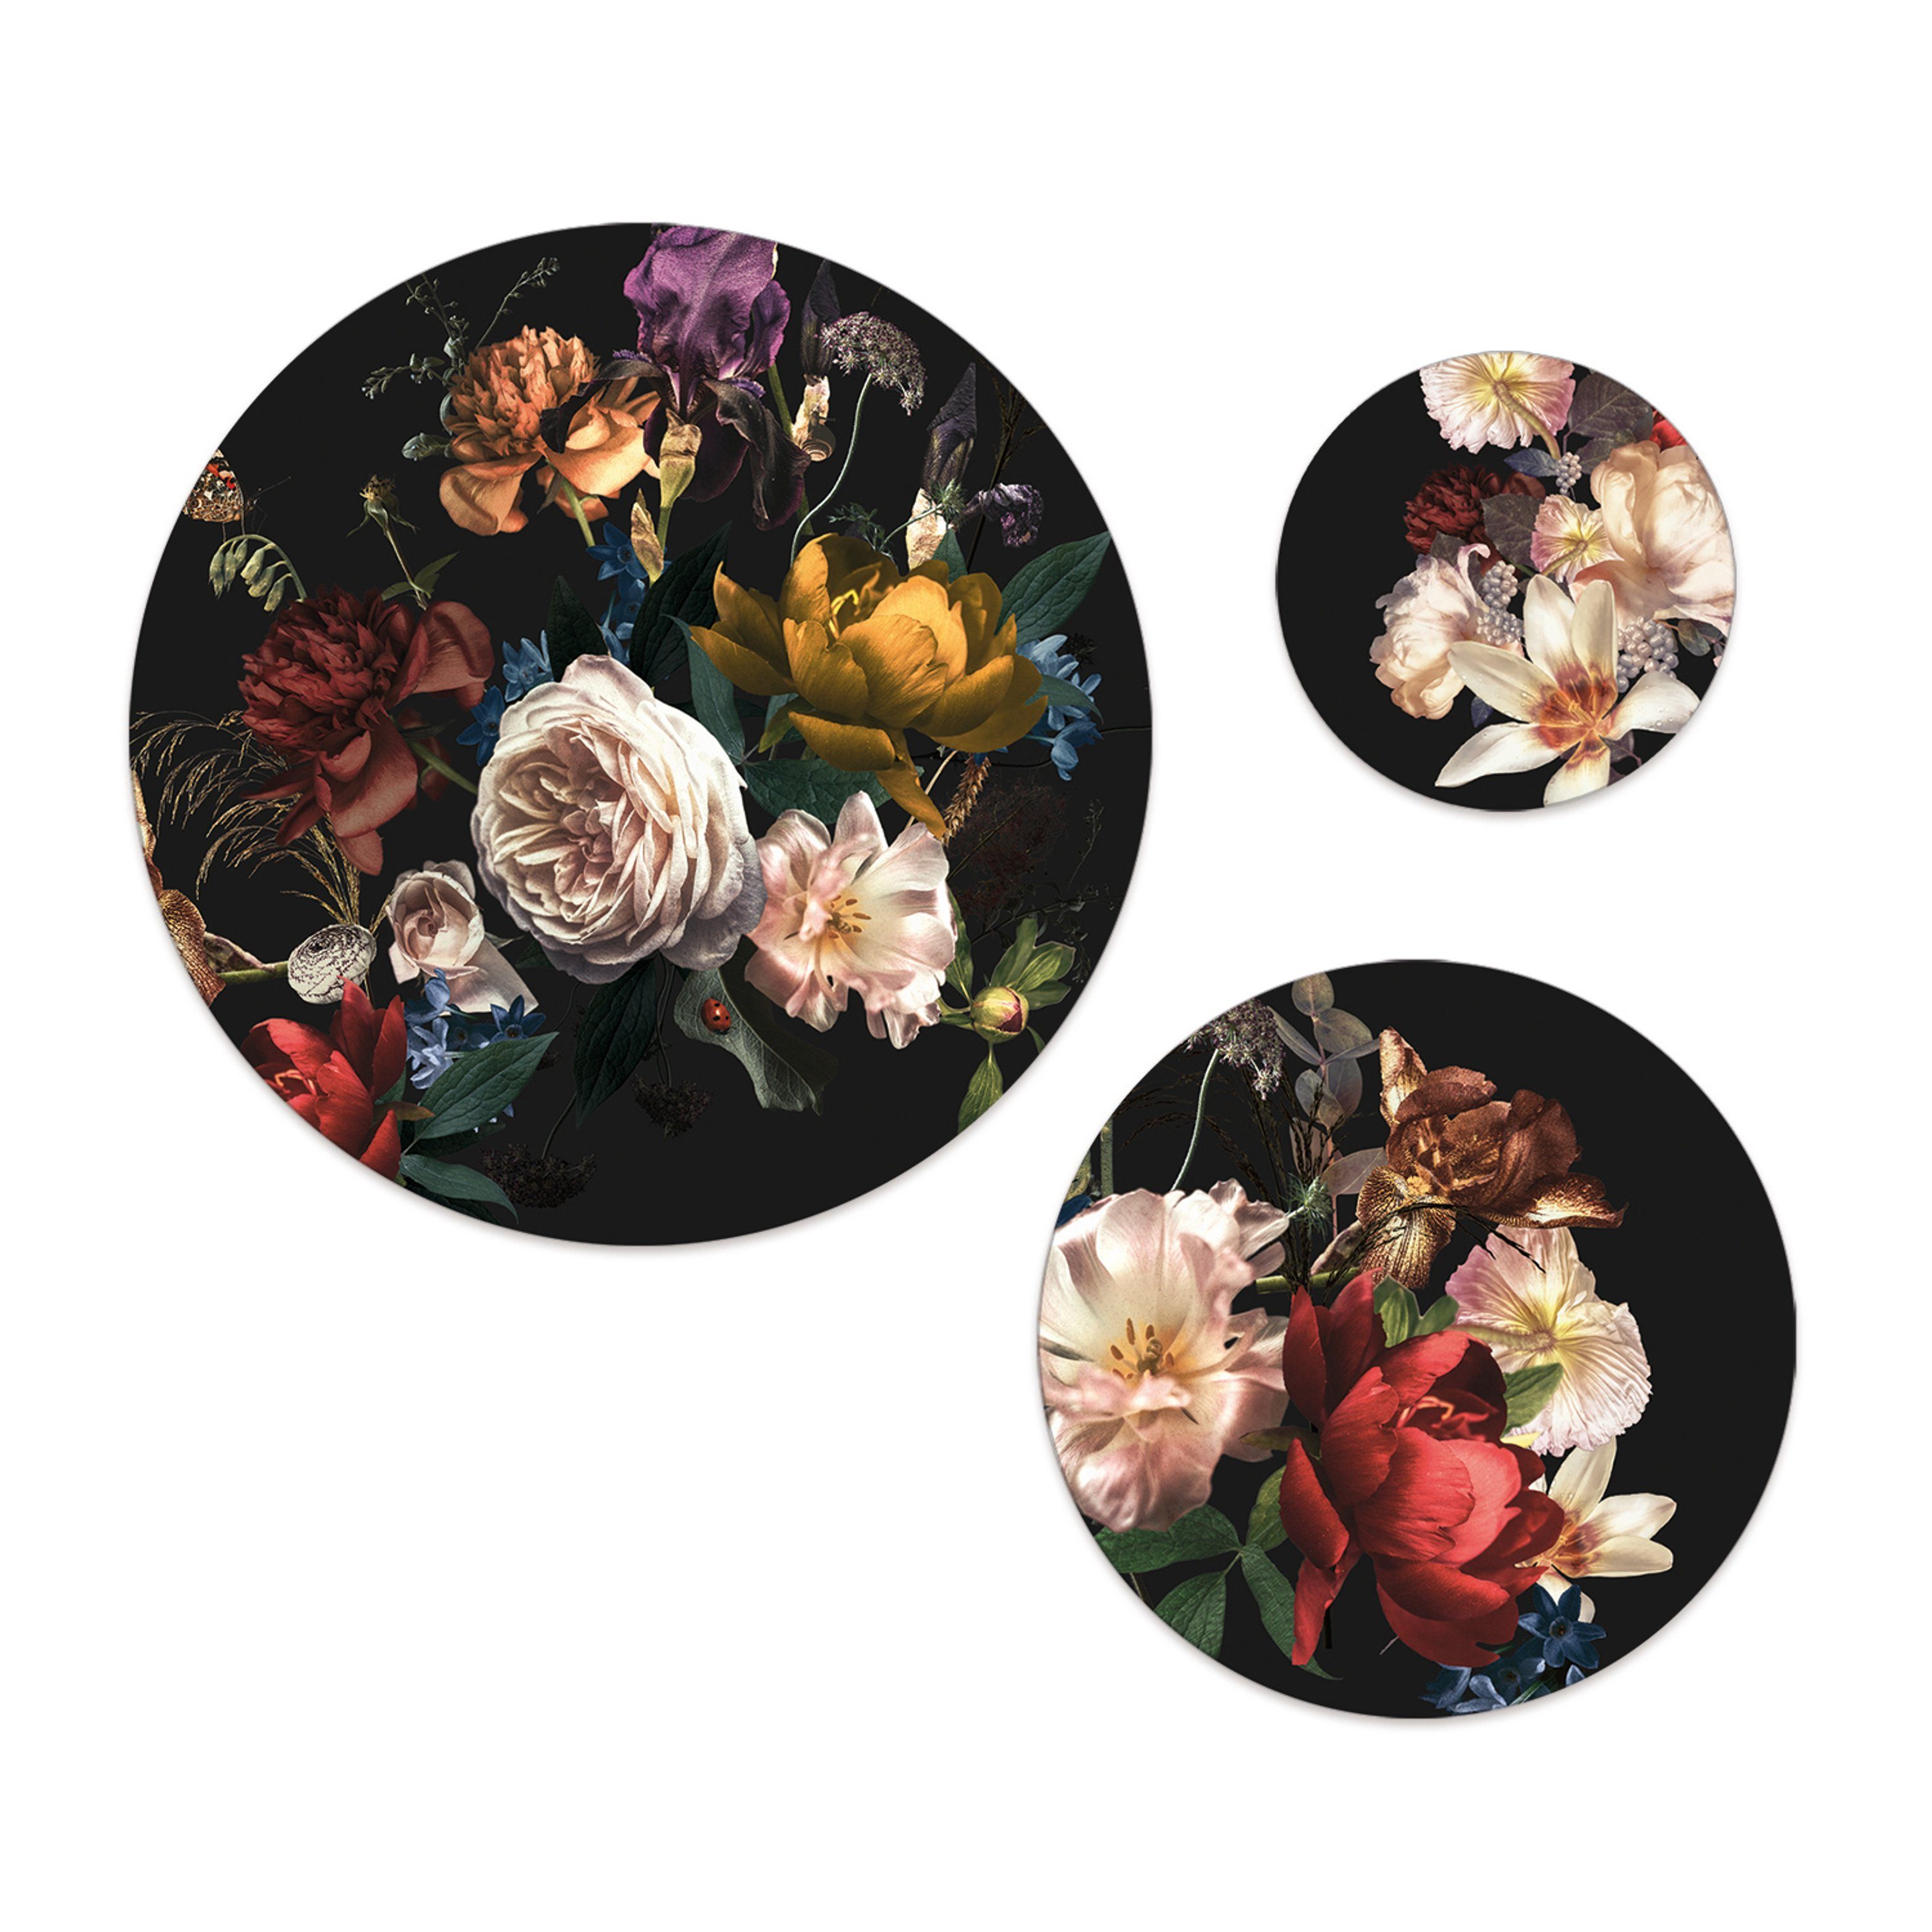 mehrteiliges Wandbilder rund Bilder Rosen auf Hintergrund vintage artissimo Blumen, Wandkreise Retro: Mehrteilige Bilder-Set 3 schwarzem